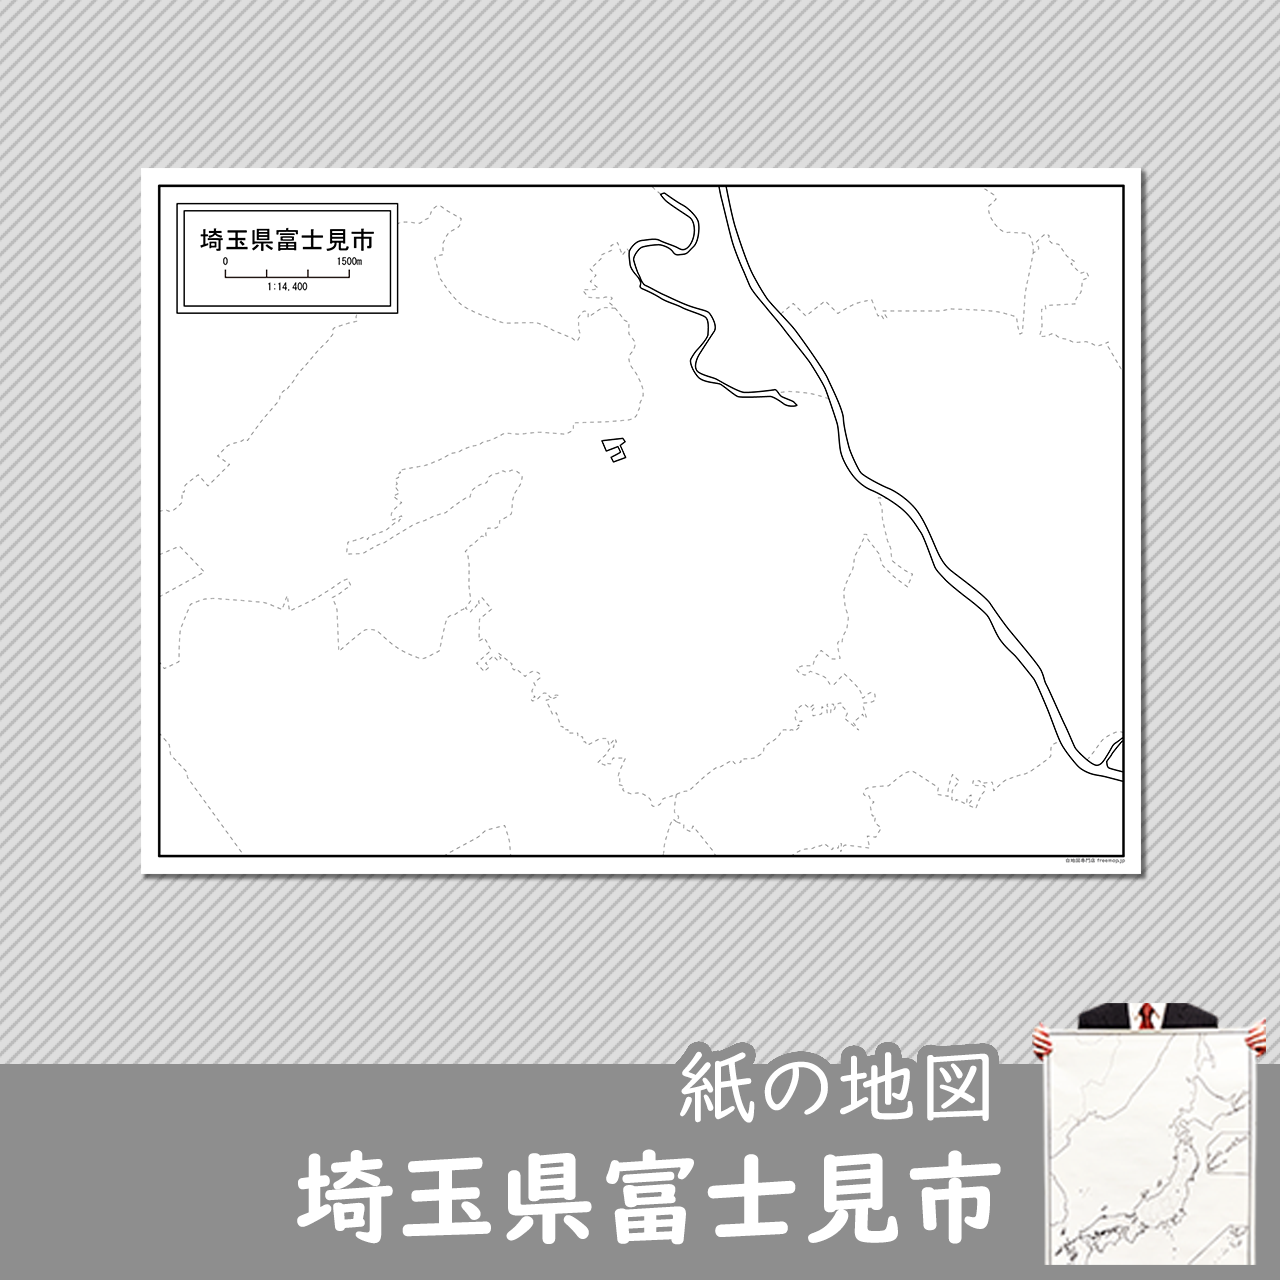 埼玉県富士見市の紙の白地図